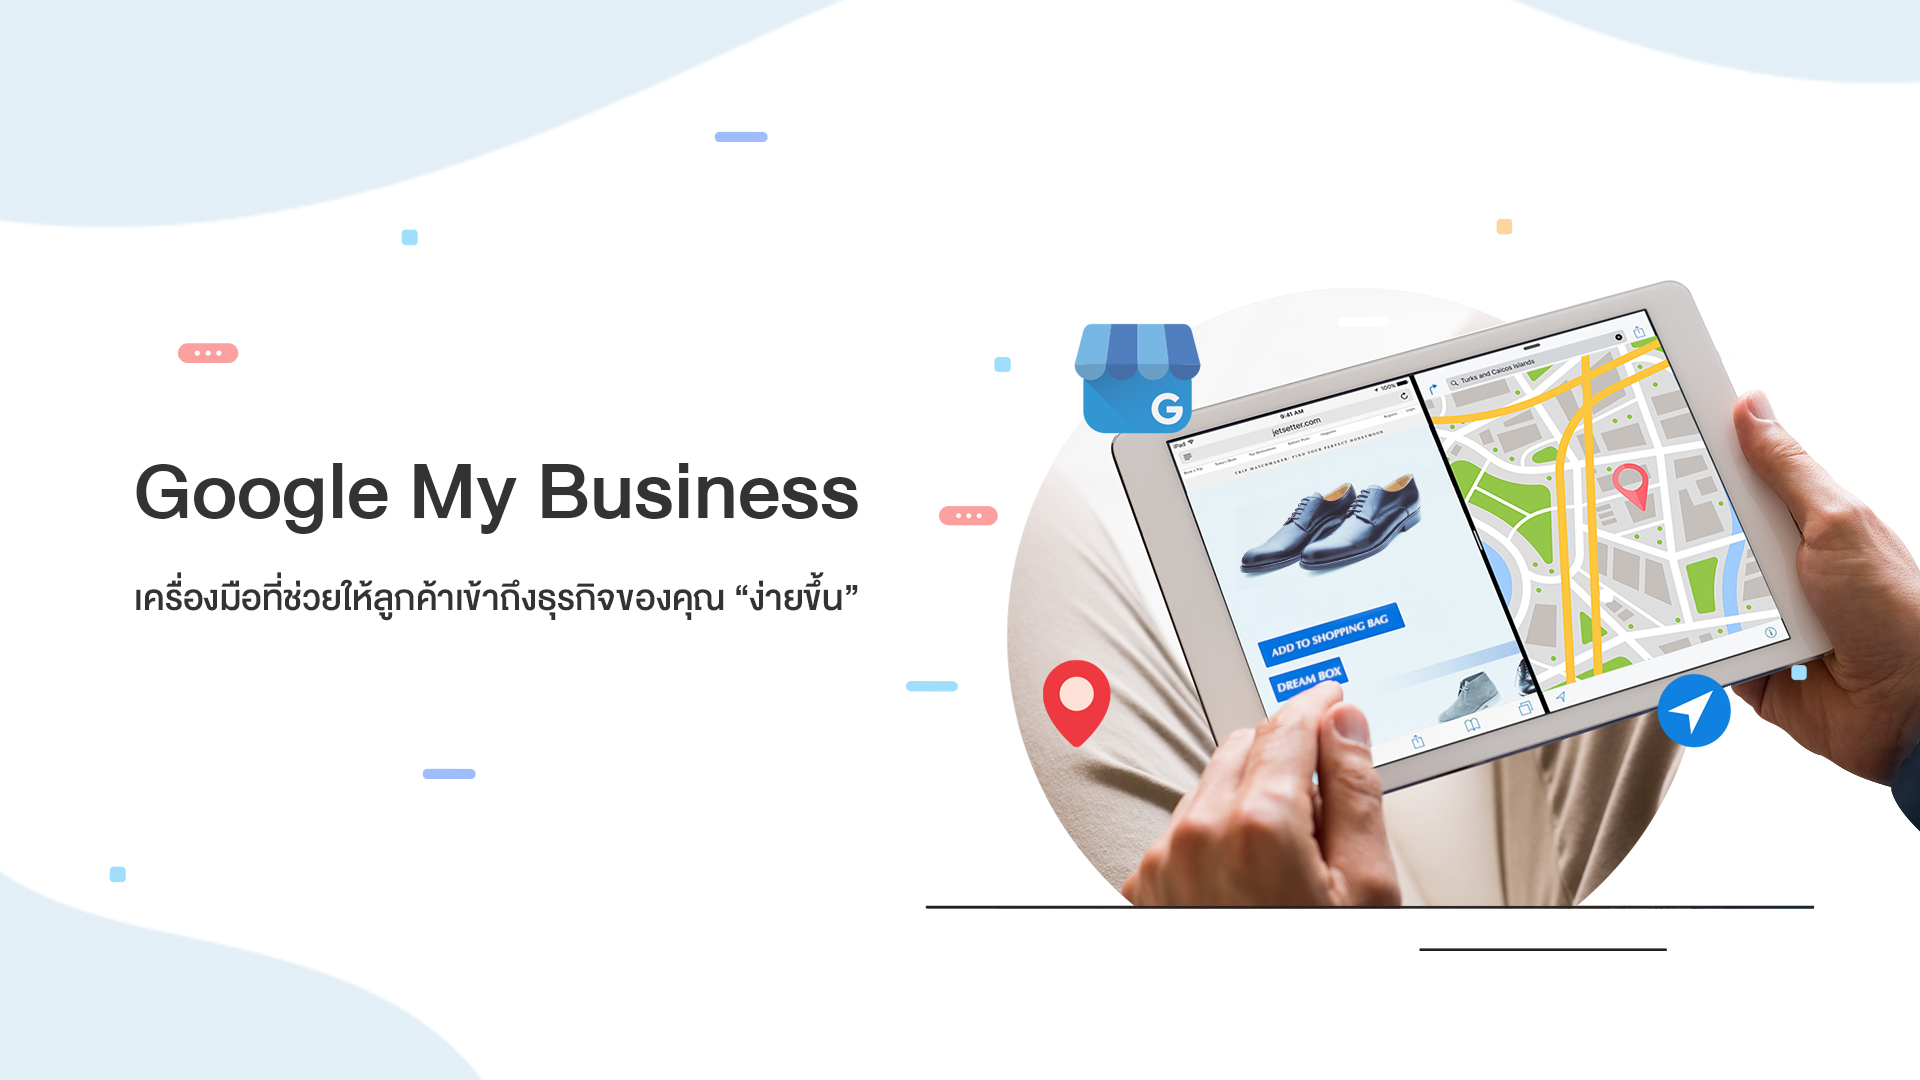 Google My Business เครื่องมือที่ช่วยให้ลูกค้าเข้าถึงธุรกิจของคุณ ง่ายขึ้น